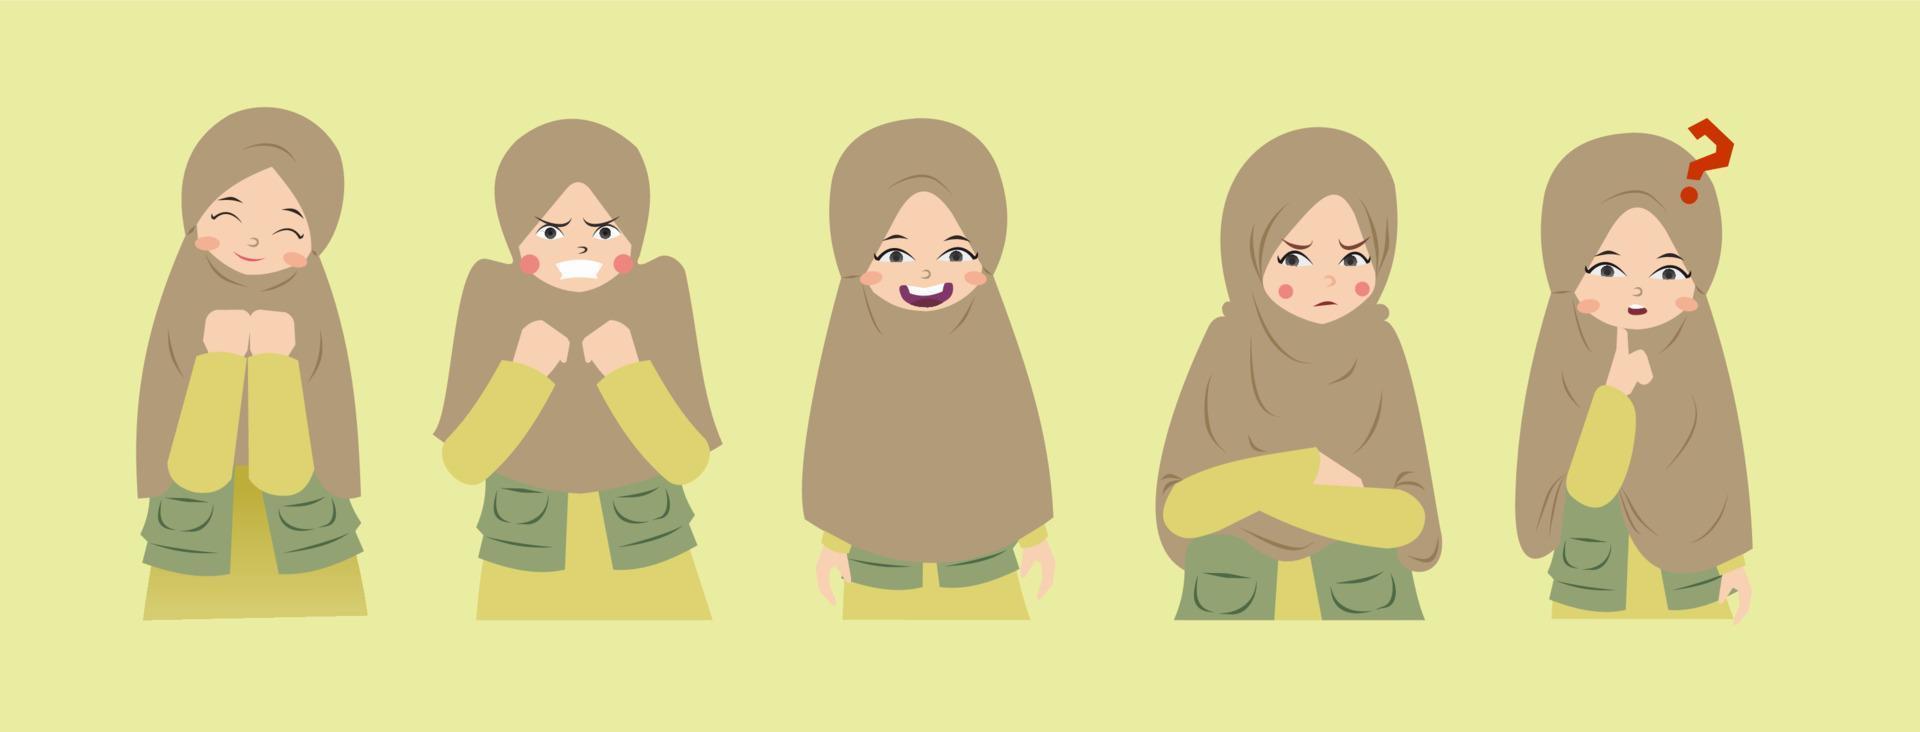 expressão de rosto hijab fofo vetor